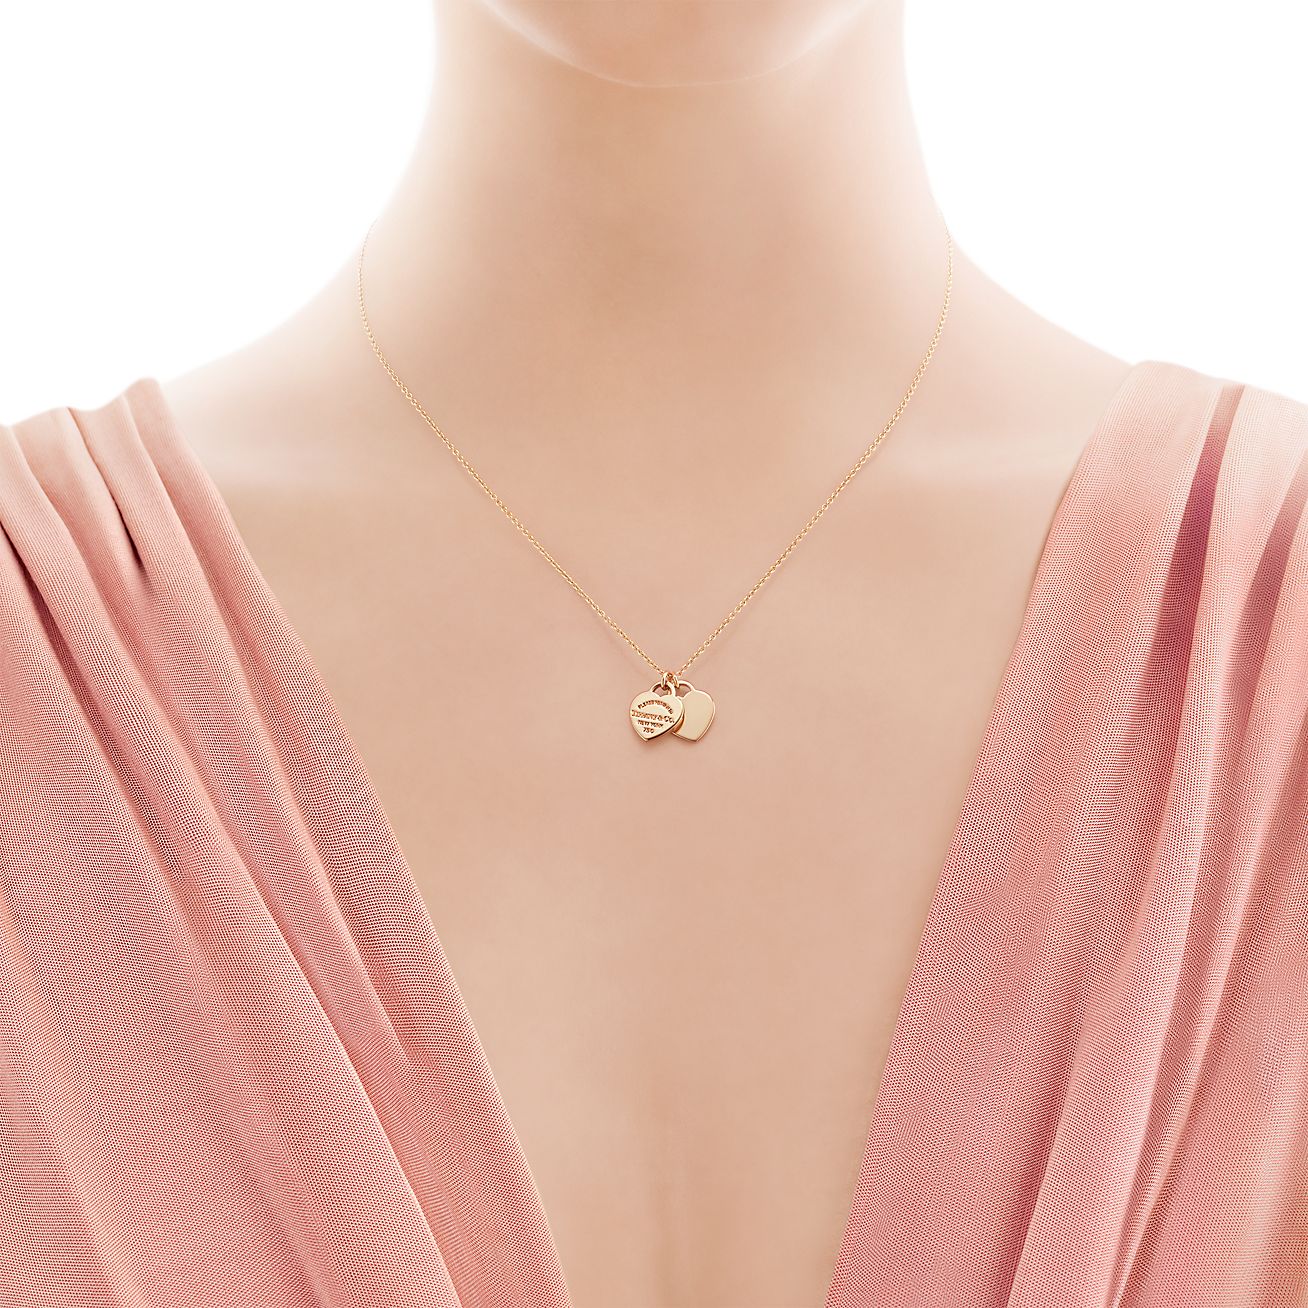 tiffany mini double heart tag necklace